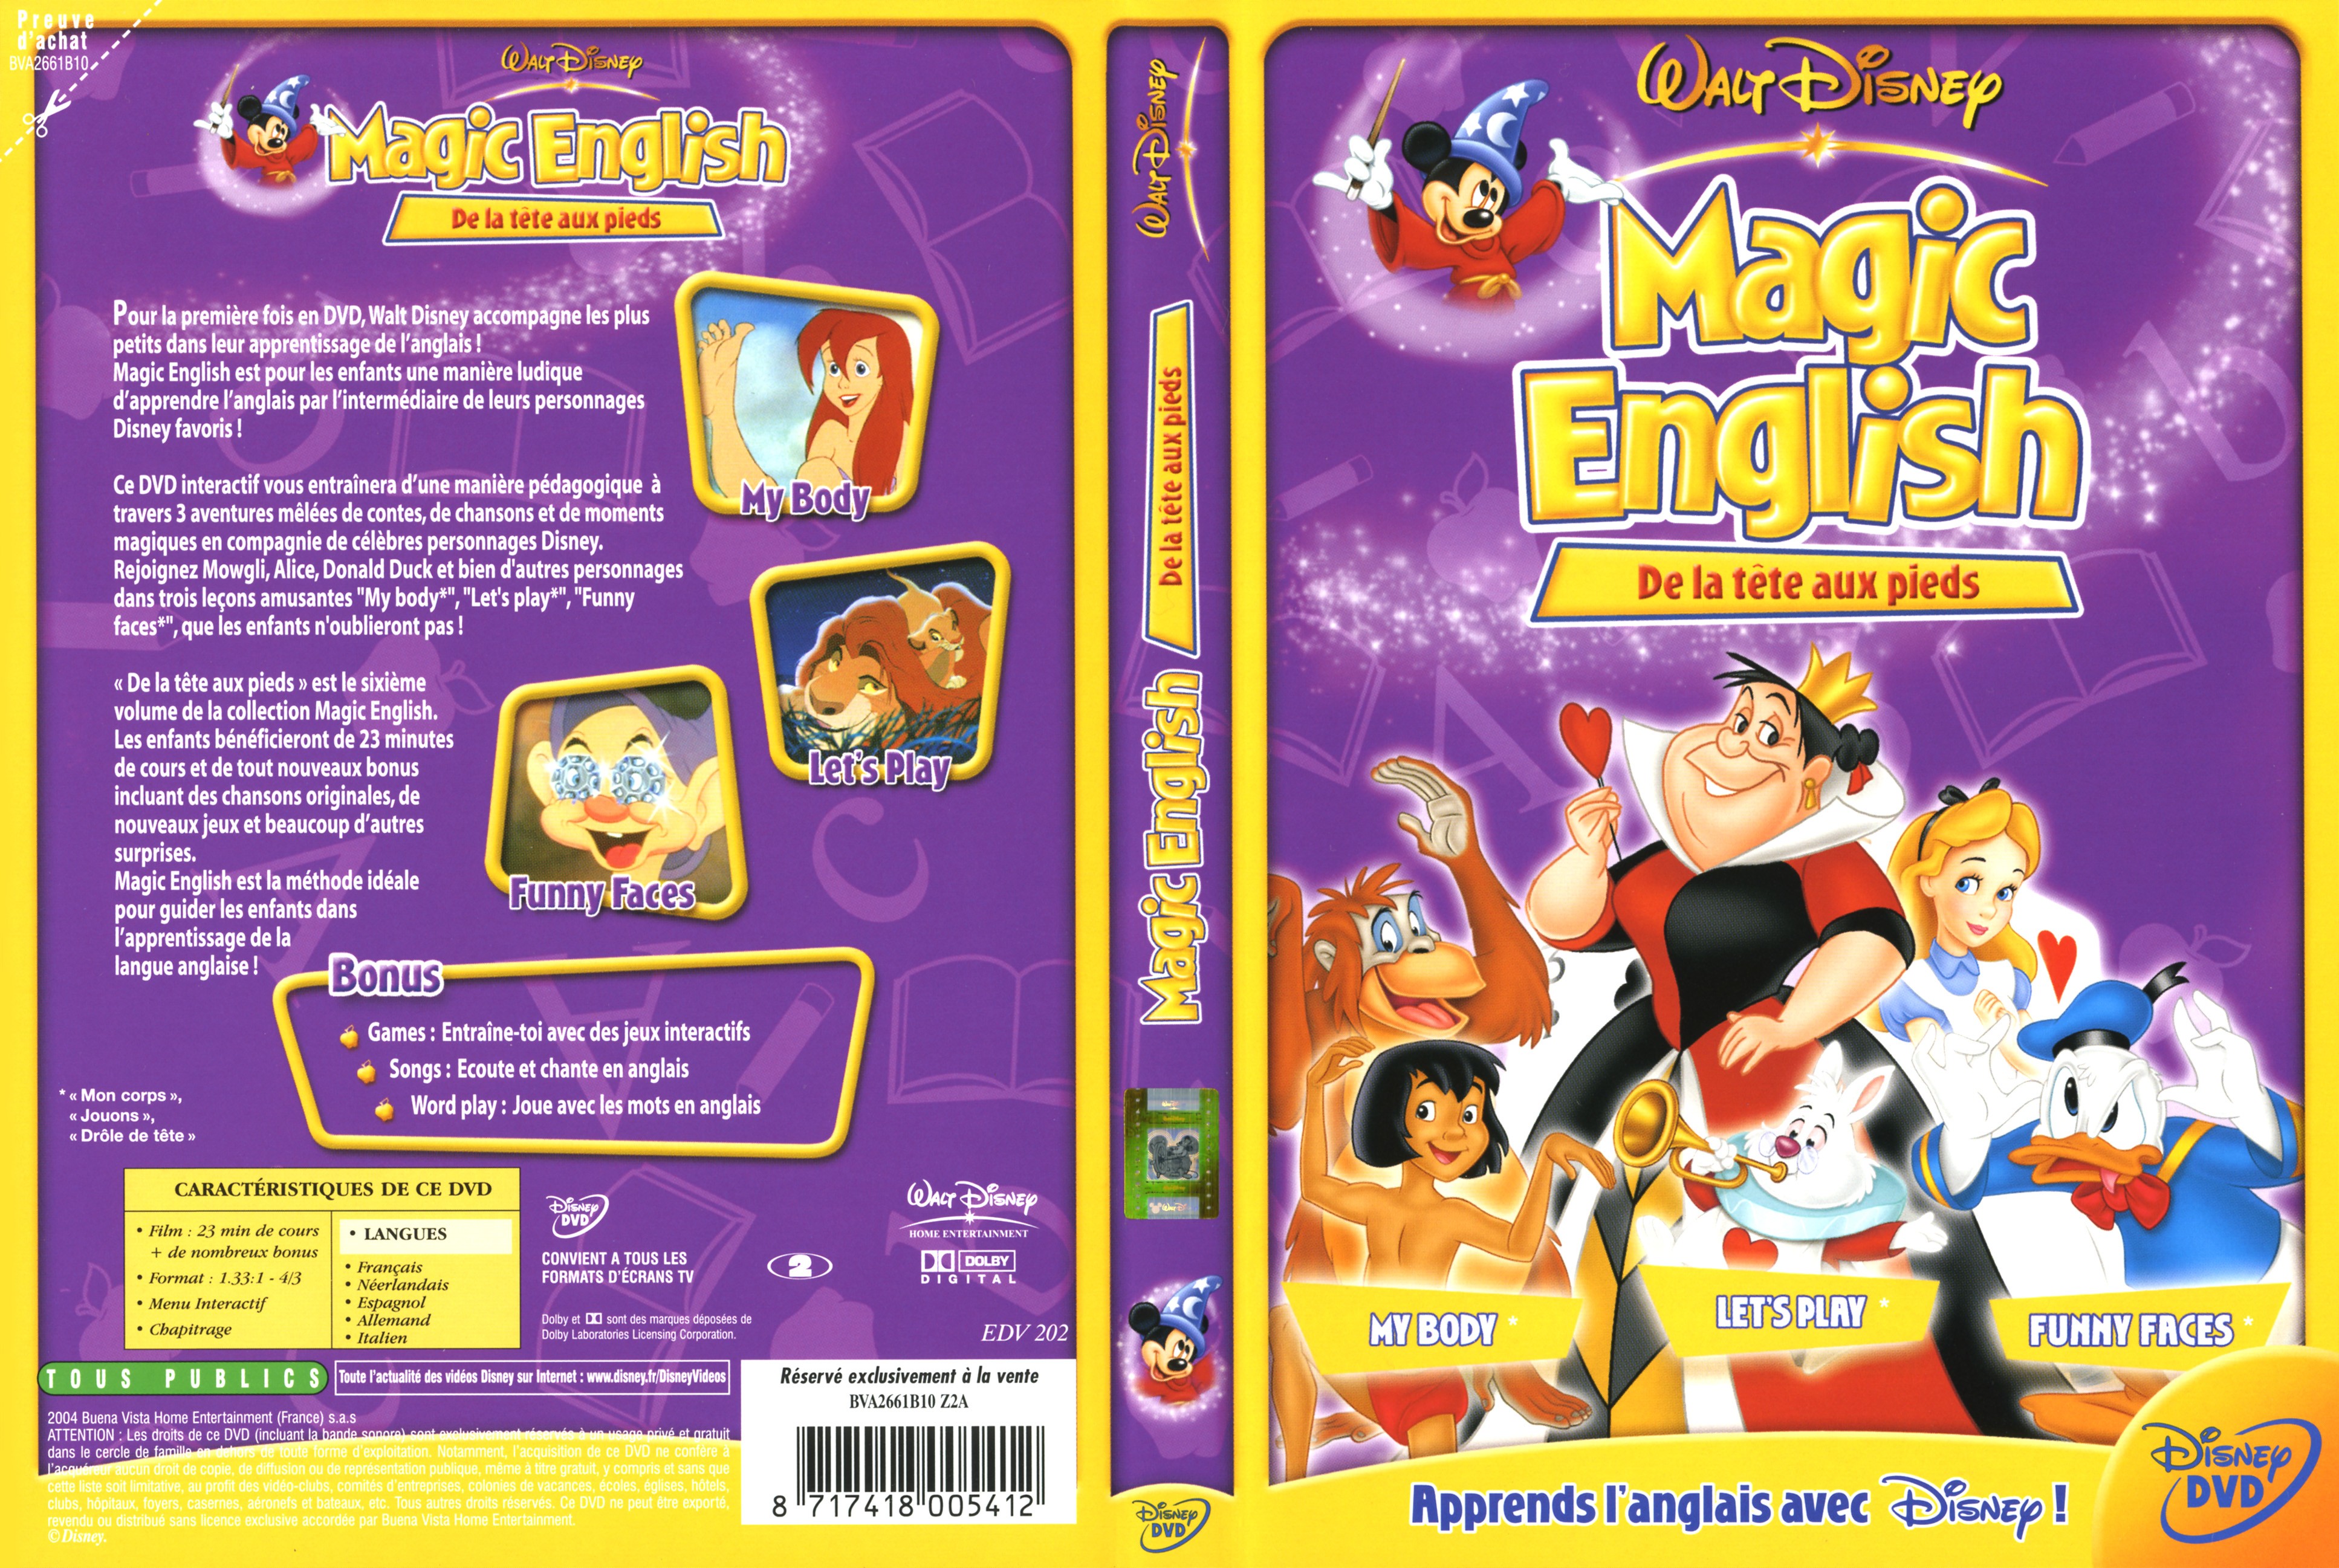 Jaquette DVD Magic english de la tete aux pieds